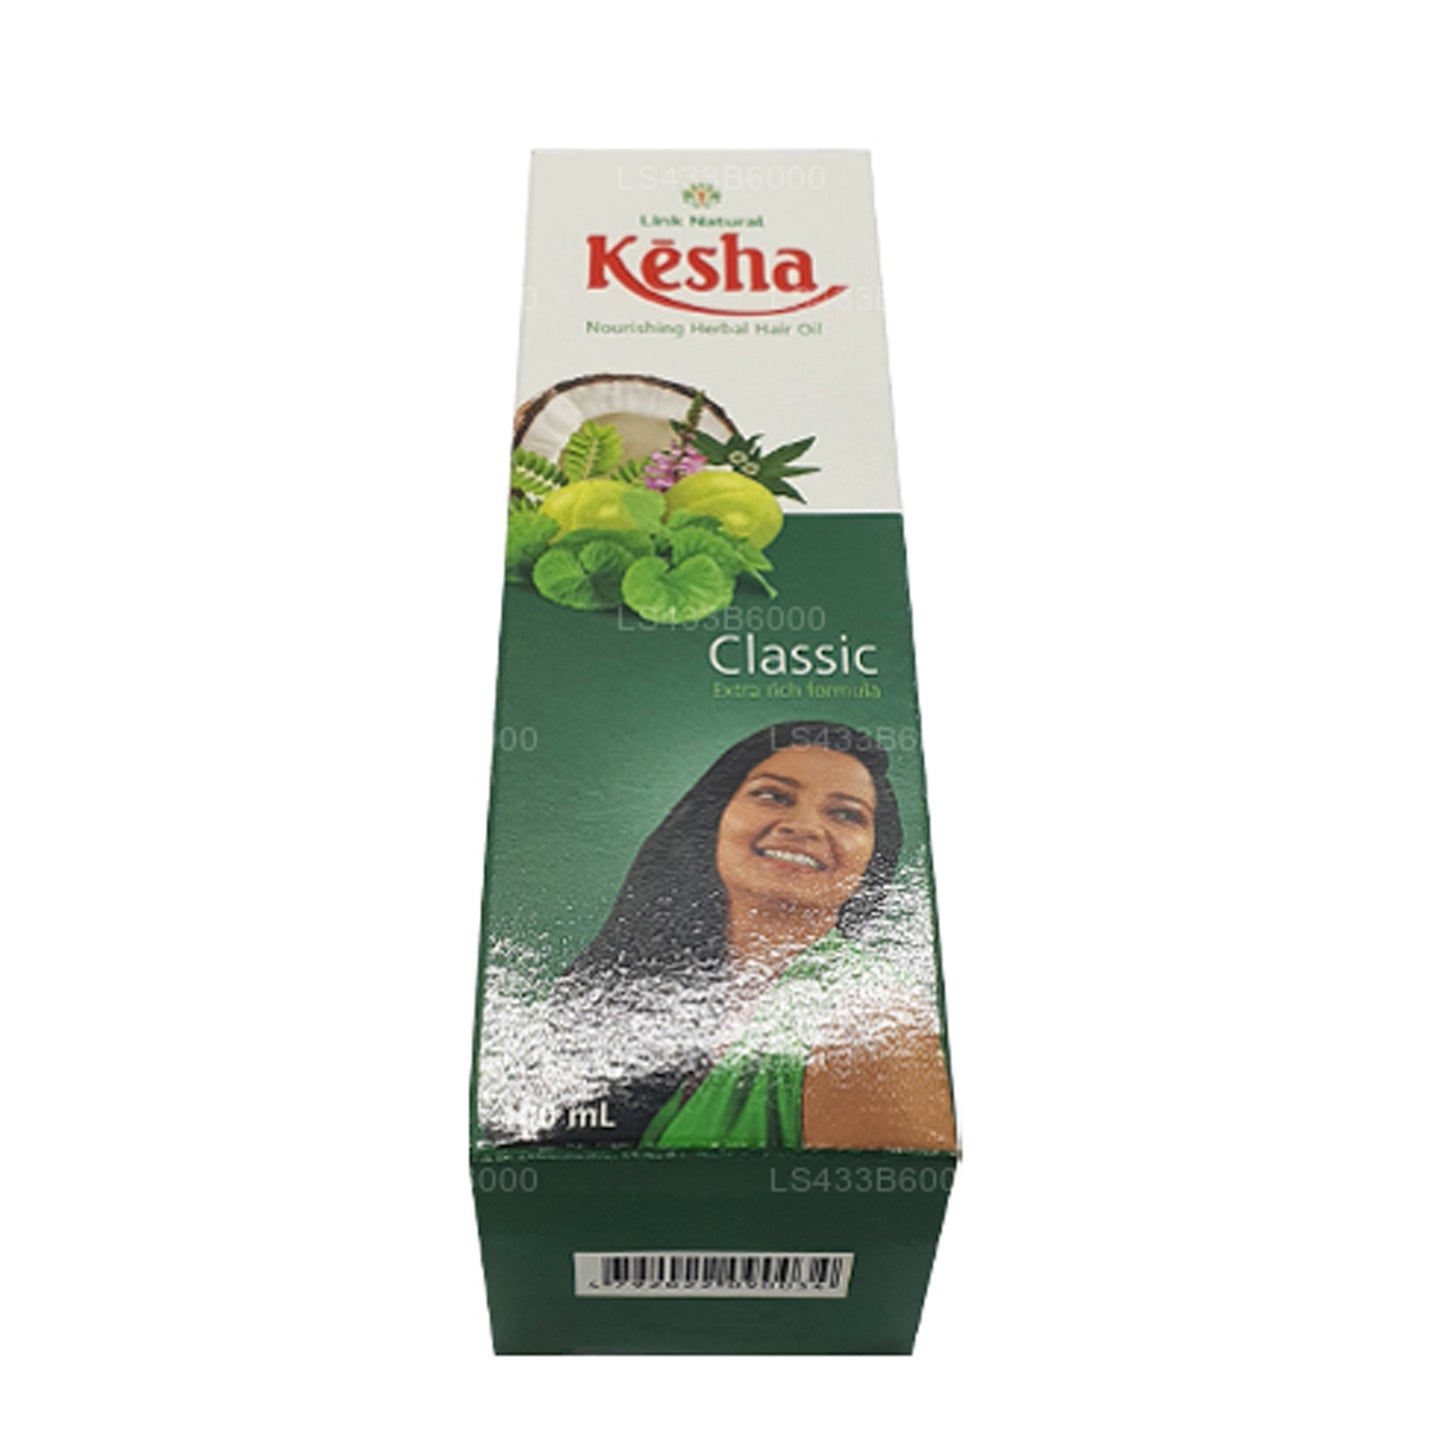 Link Natural Kesha Besleyici Bitkisel Saç Yağı (100ml)